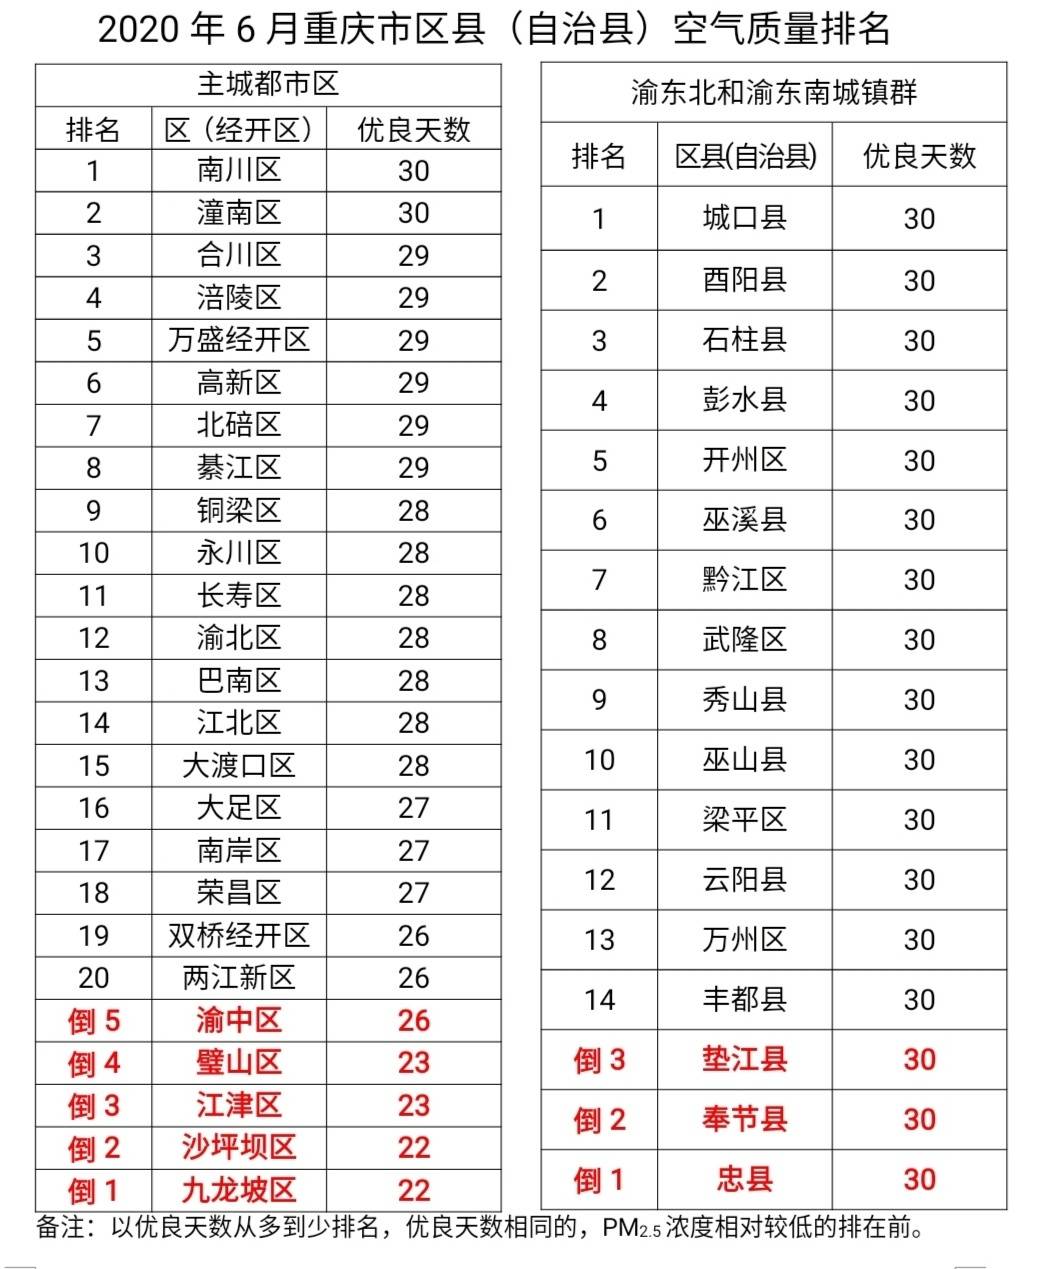 重庆最新空气质量排名出炉 一共收获169个蓝天!同比增加8天